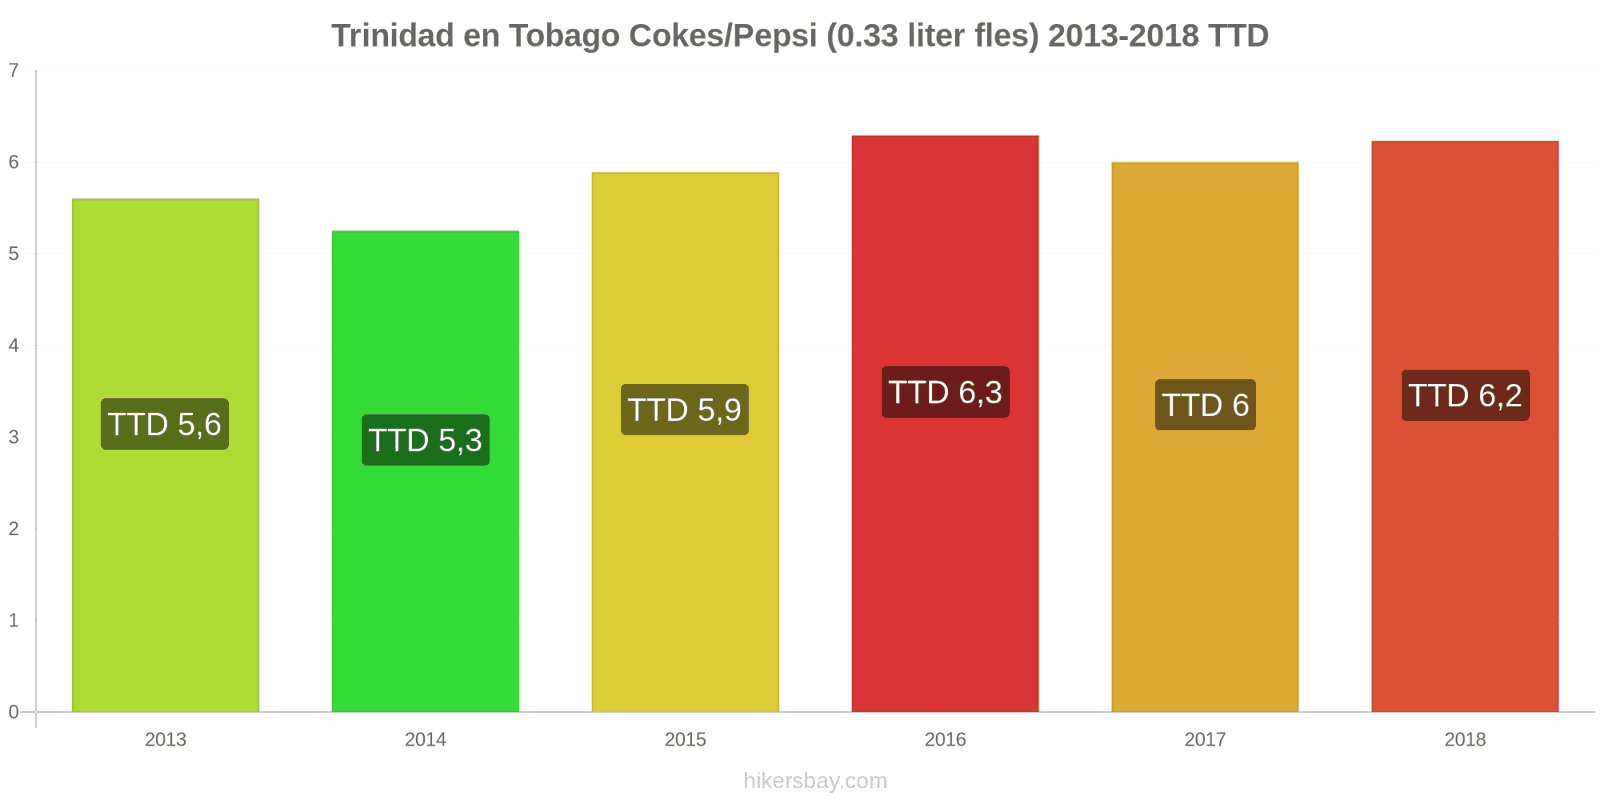 Trinidad en Tobago prijswijzigingen Coca-Cola/Pepsi (0.33 liter fles) hikersbay.com